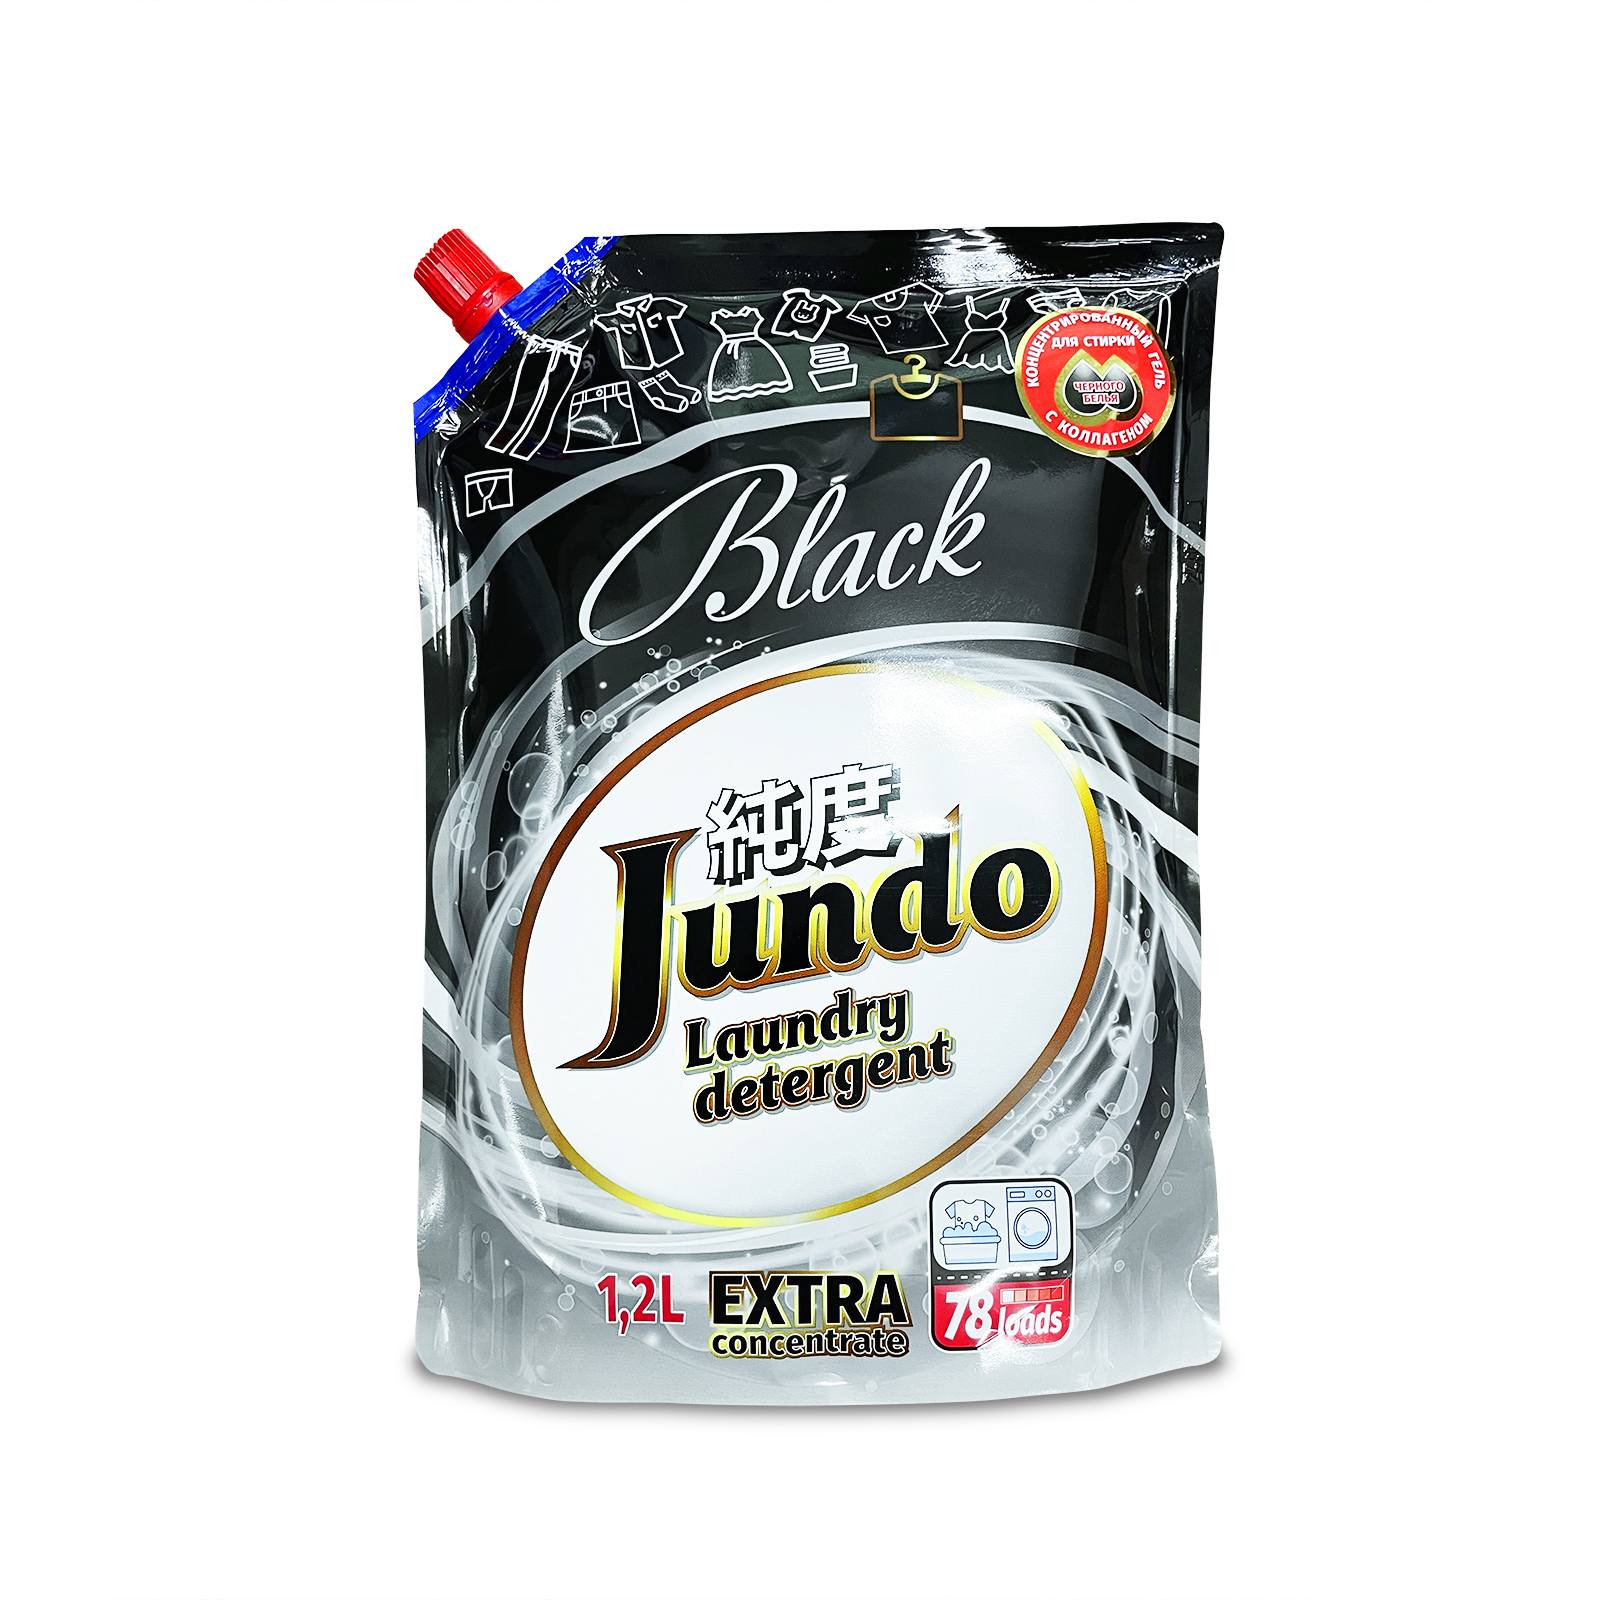 фото Гель для стирки черного белья jundo black концентрированный с коллагеном 78 стирок 1,2 л